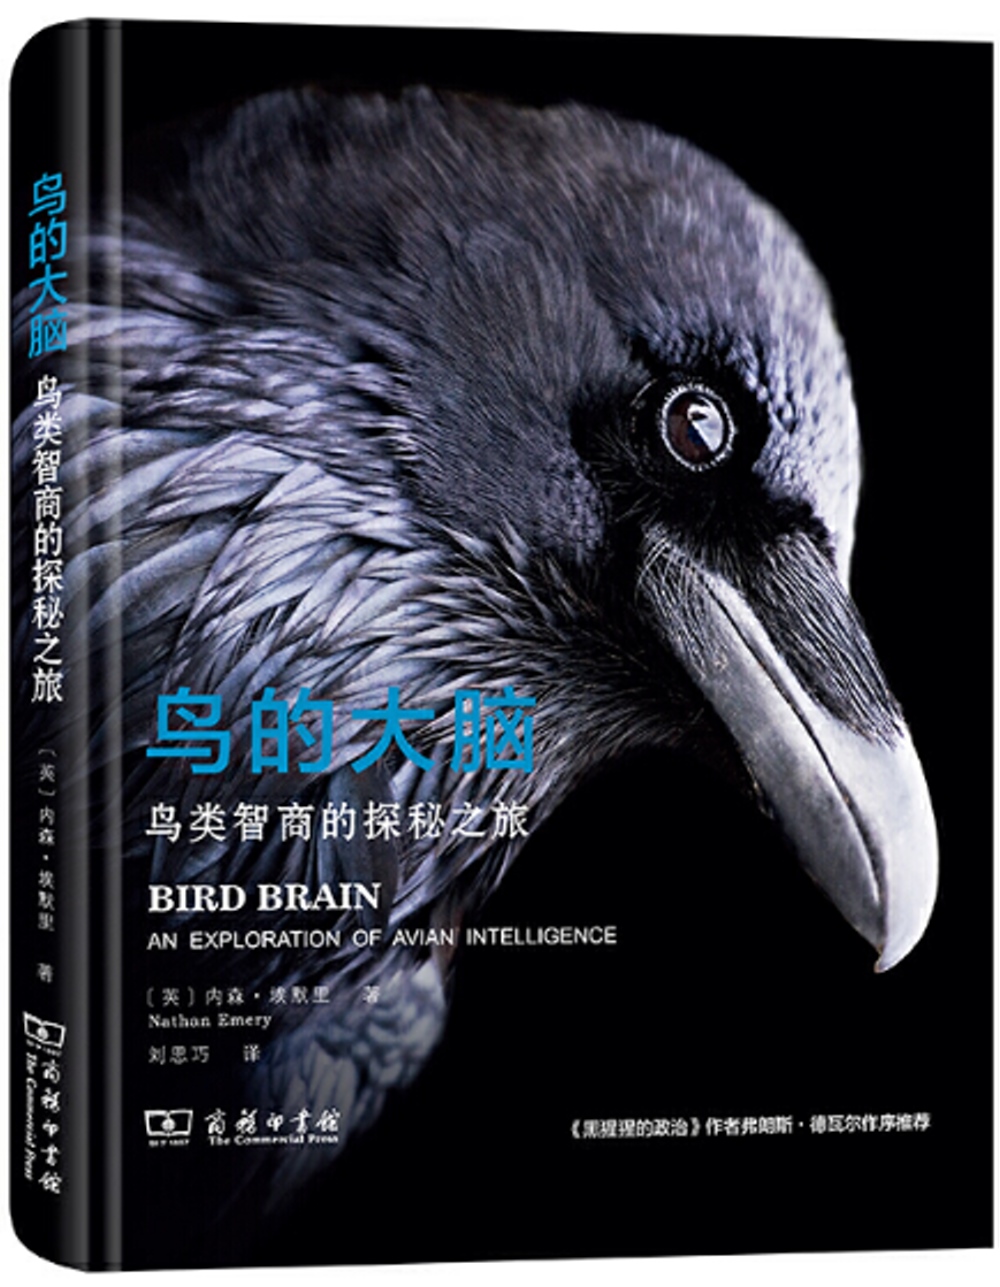 鳥的大腦：鳥類智商的探秘之旅